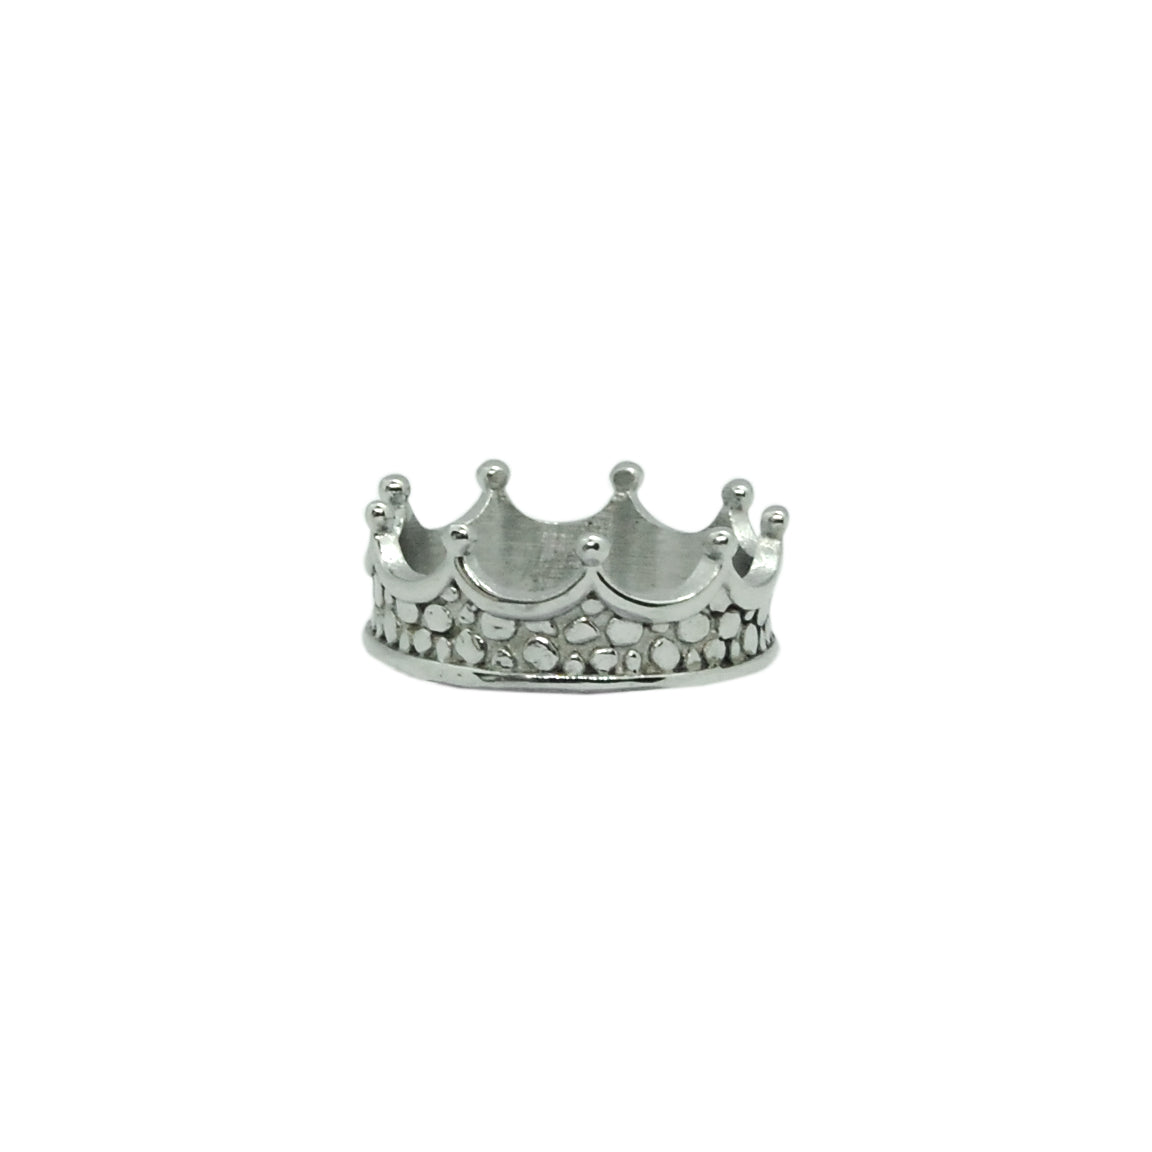 ESR 5909: Elizabeth Crown Ring